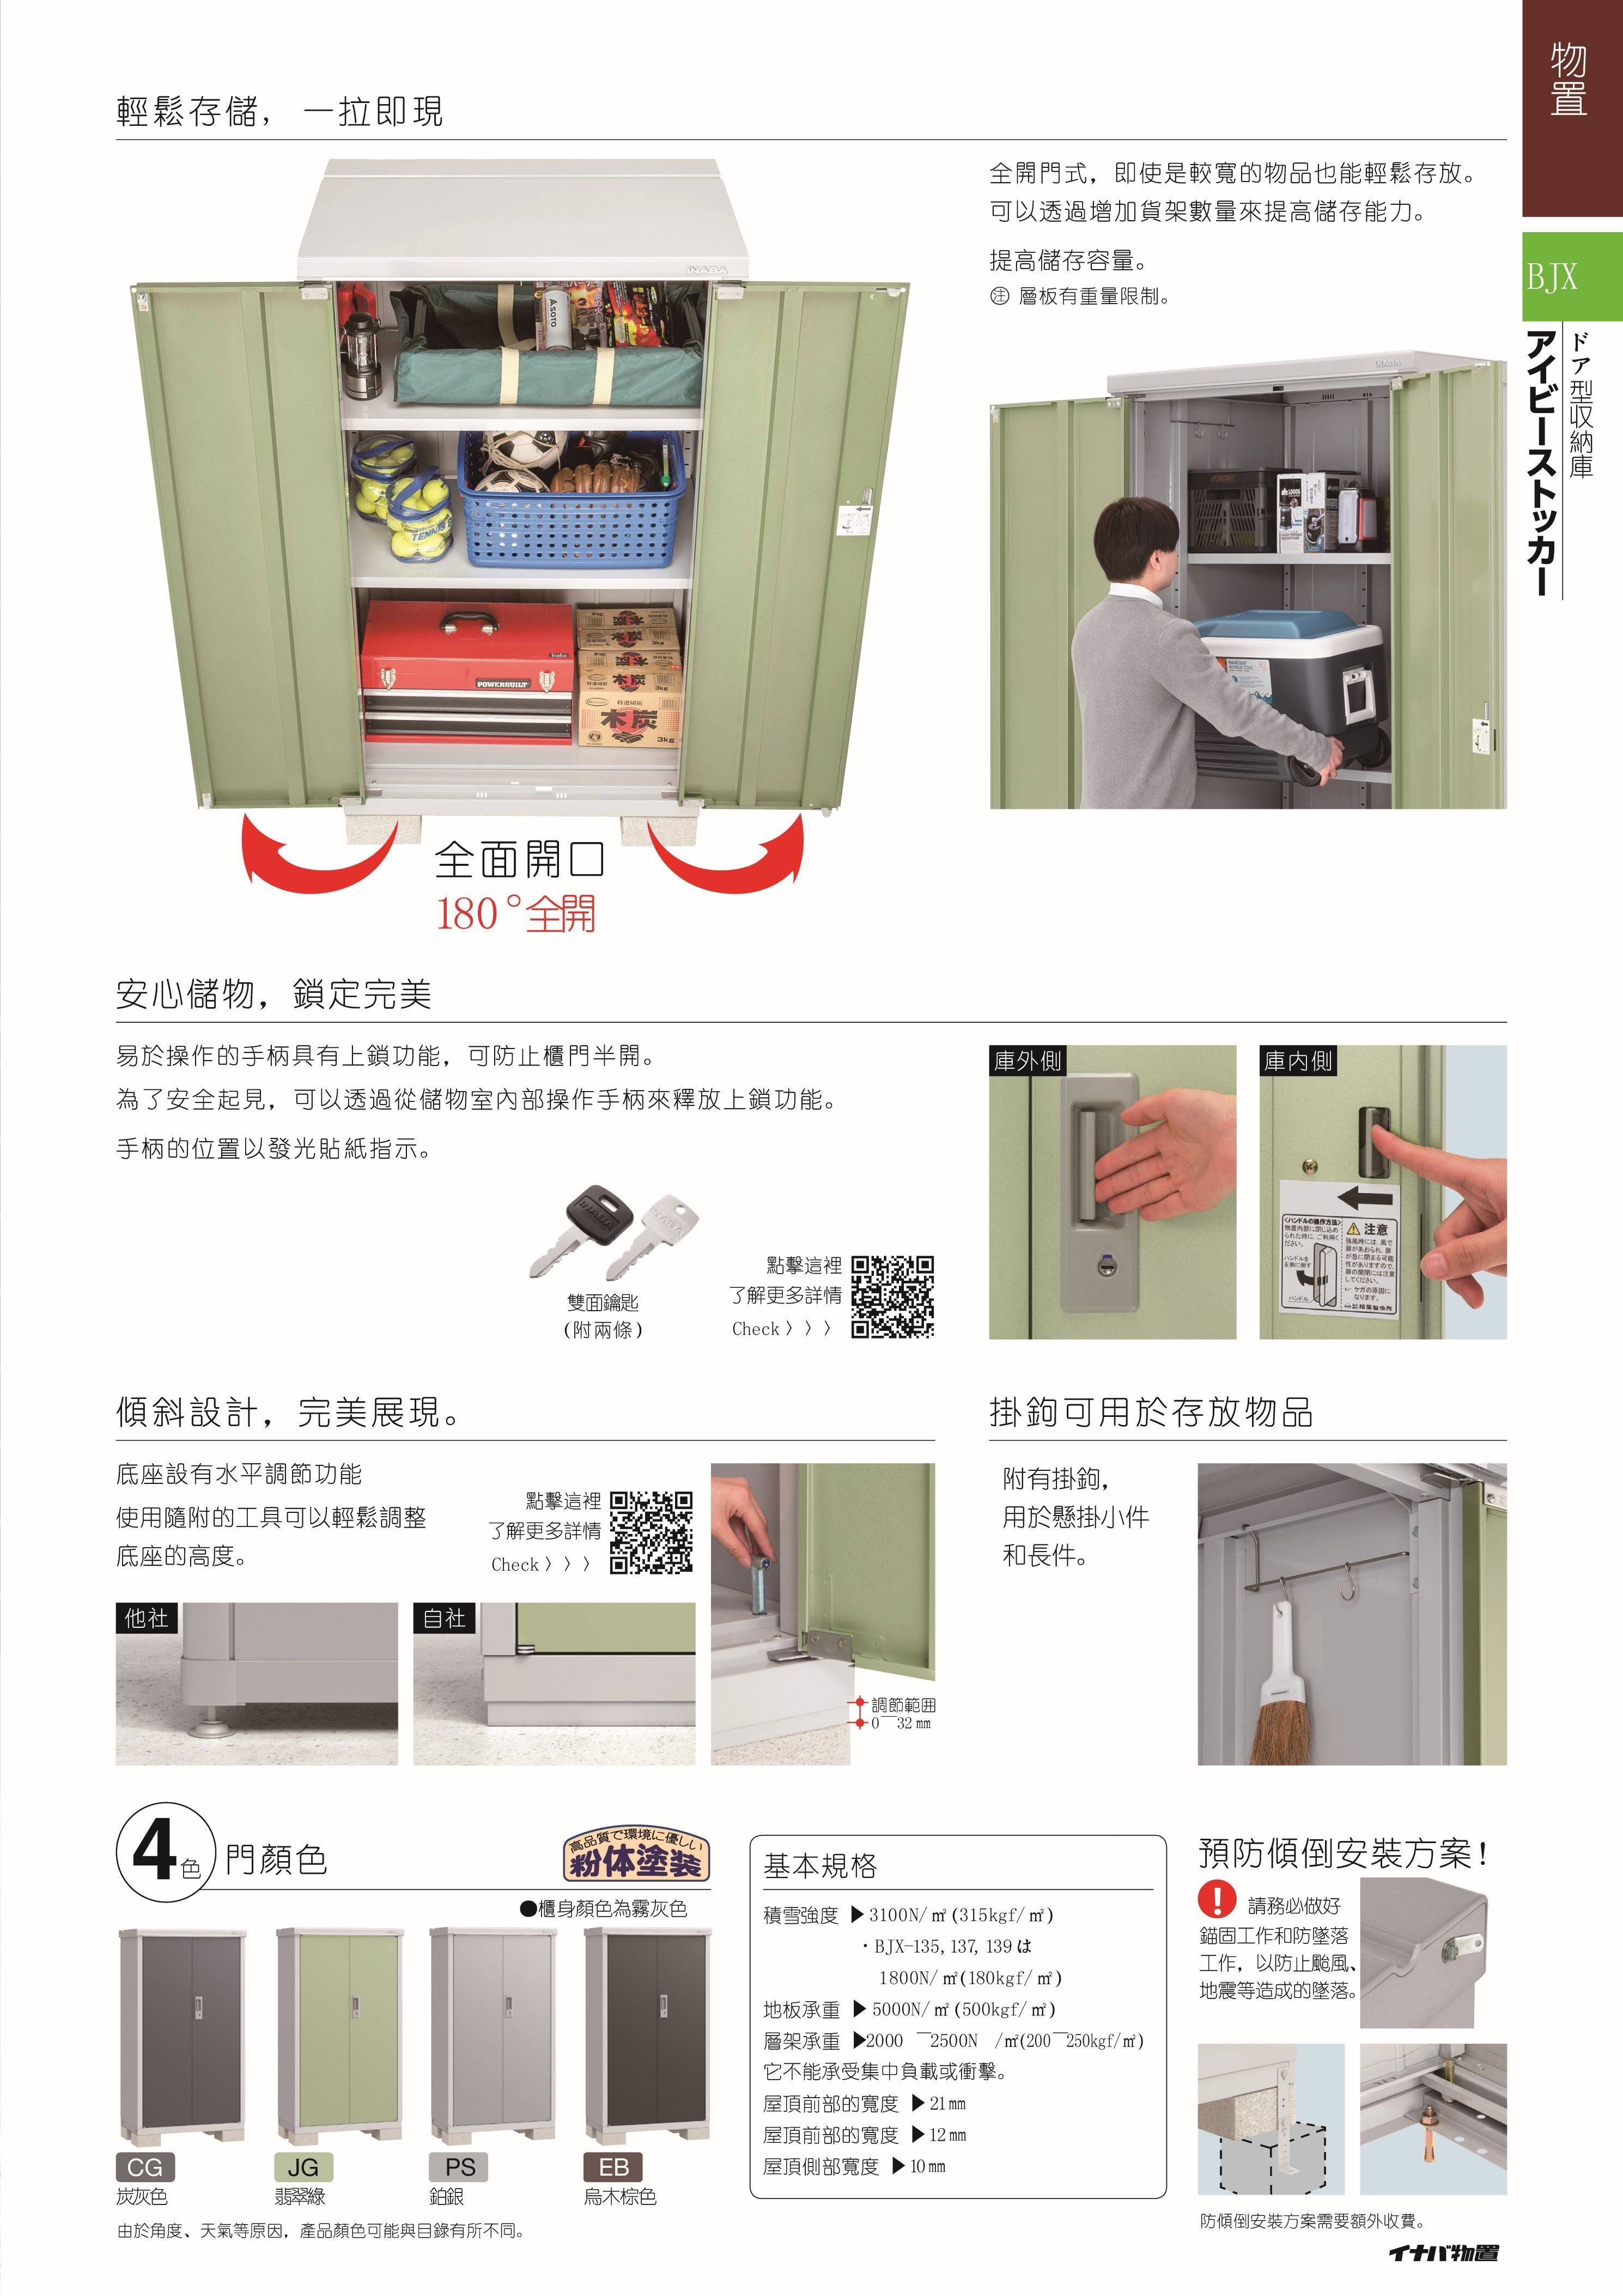 Inaba BJX-099E-EB BJX 戶外儲物櫃 (W920 x D938 x H1903mm) (烏木棕)